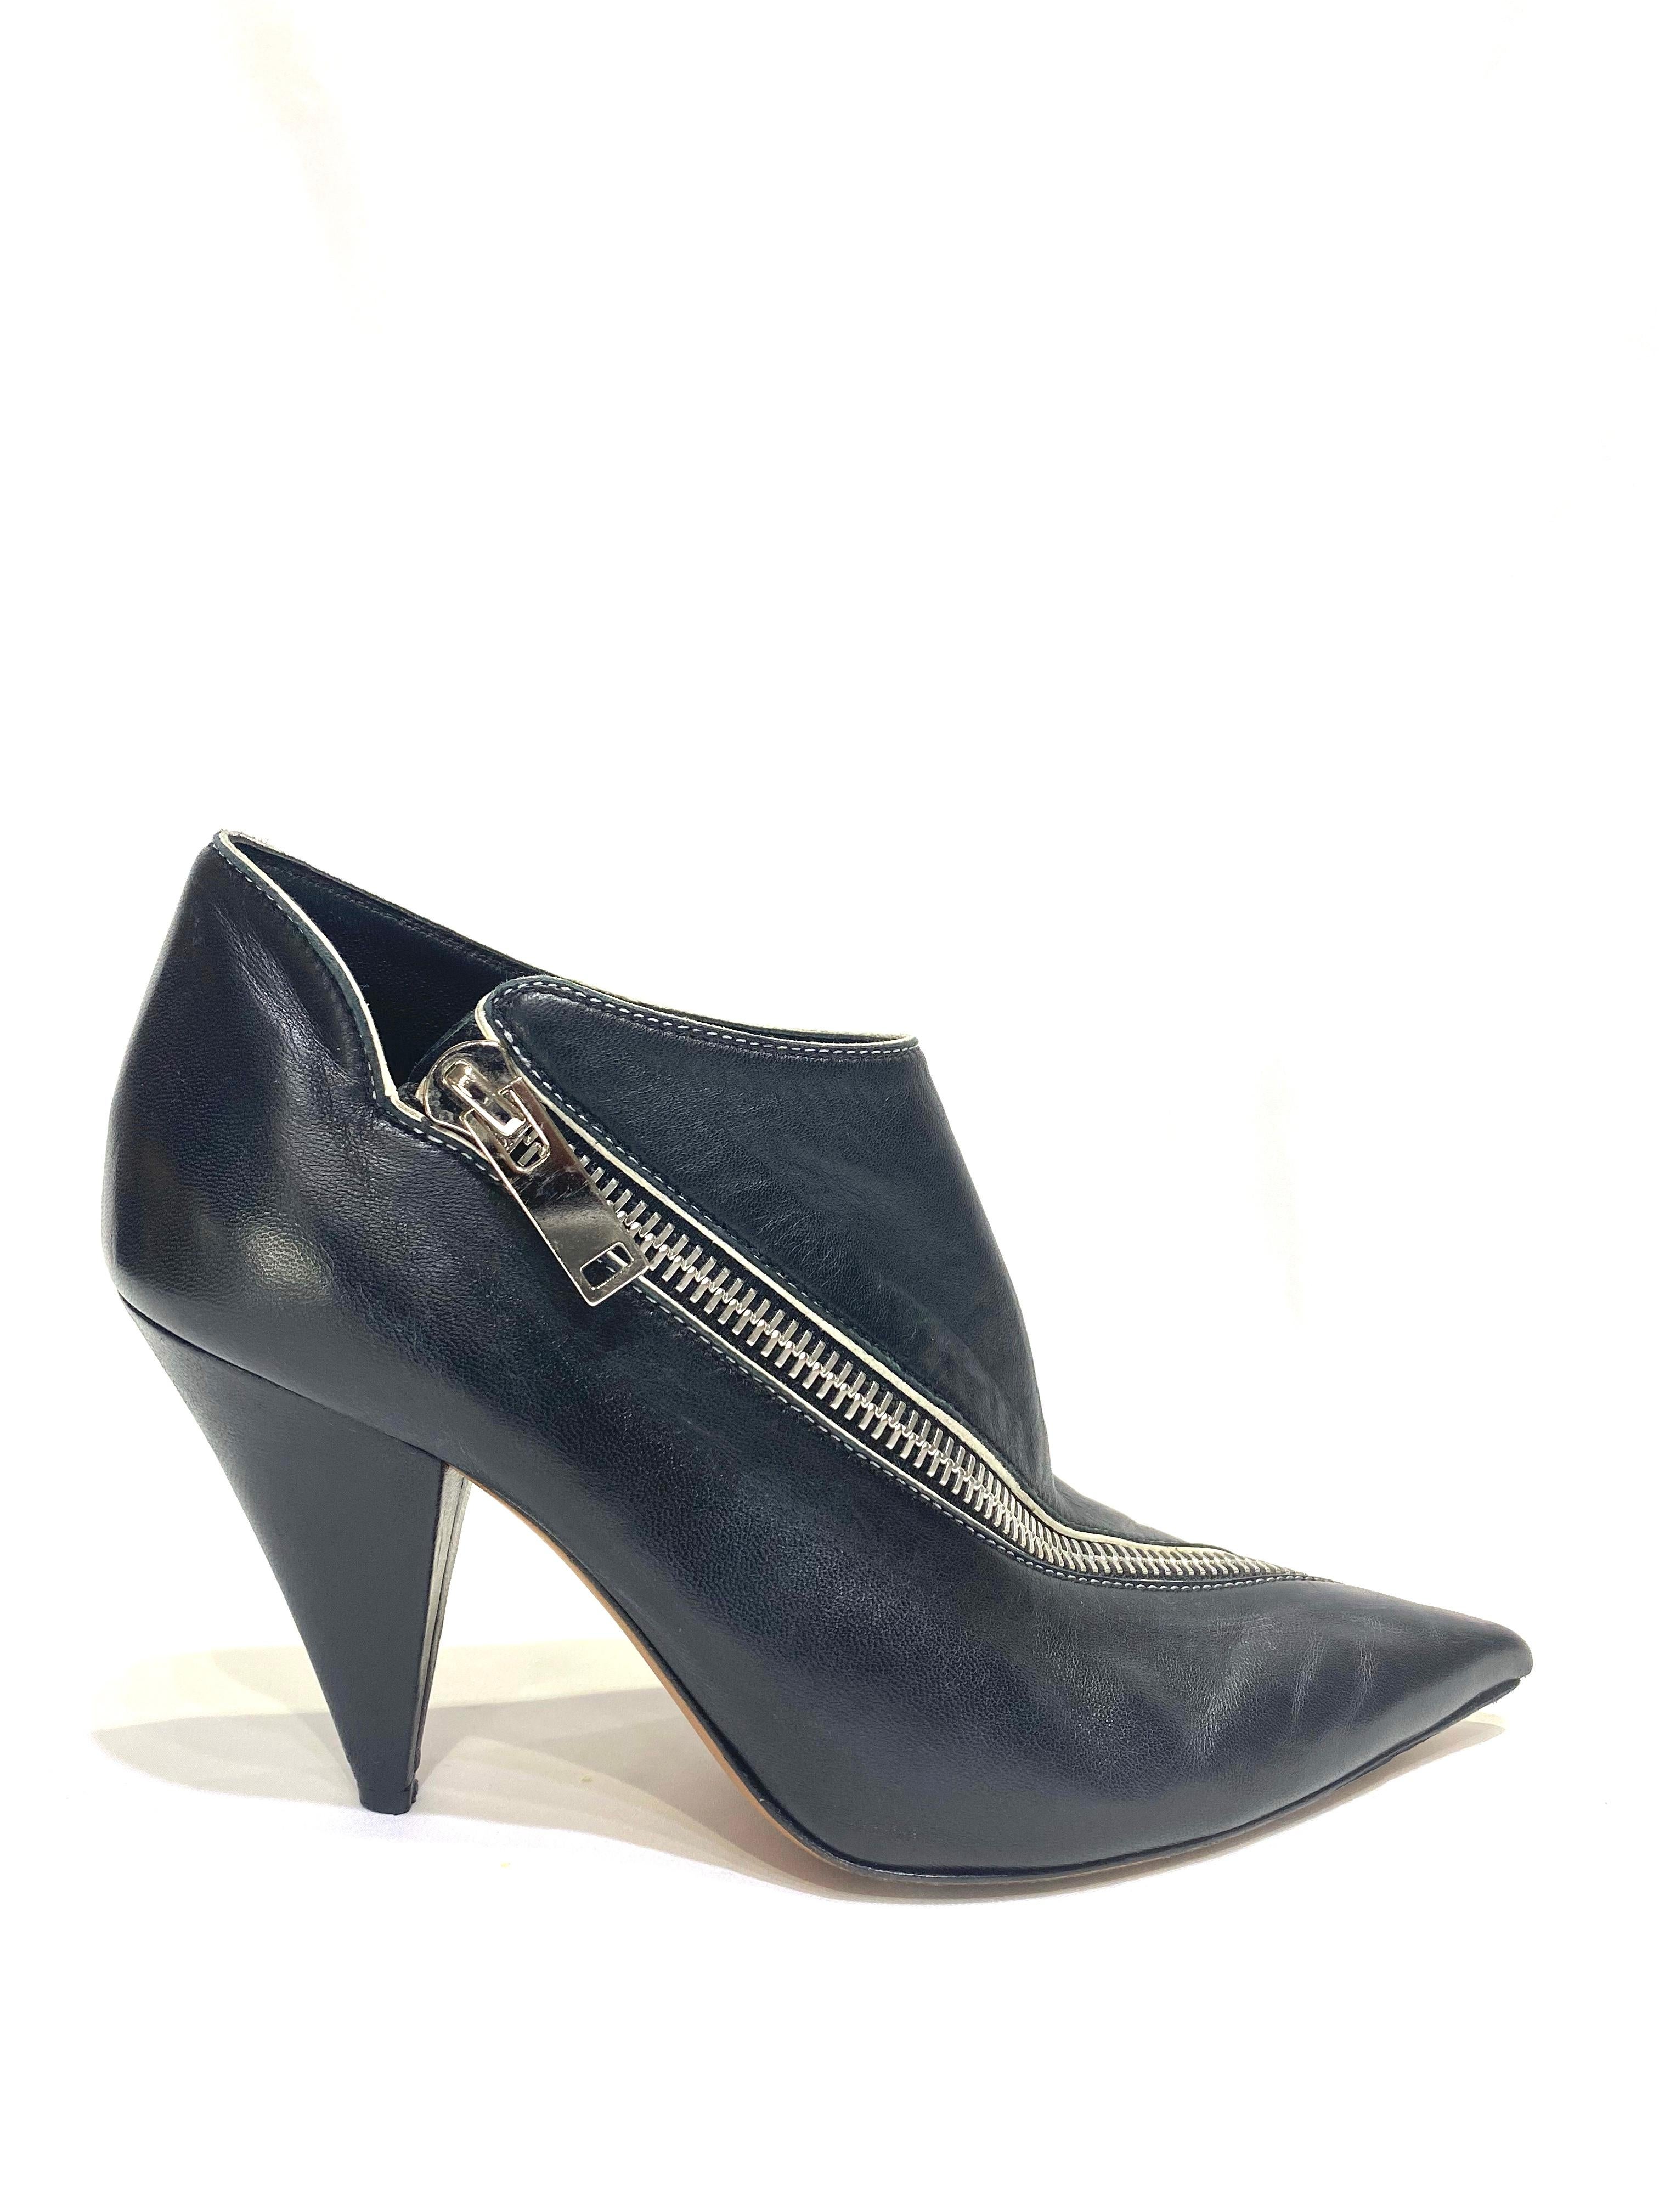 Women's Celine Low Boot 90 Zip Nappa Leather Black Zipper Size 8.5/ 38.5